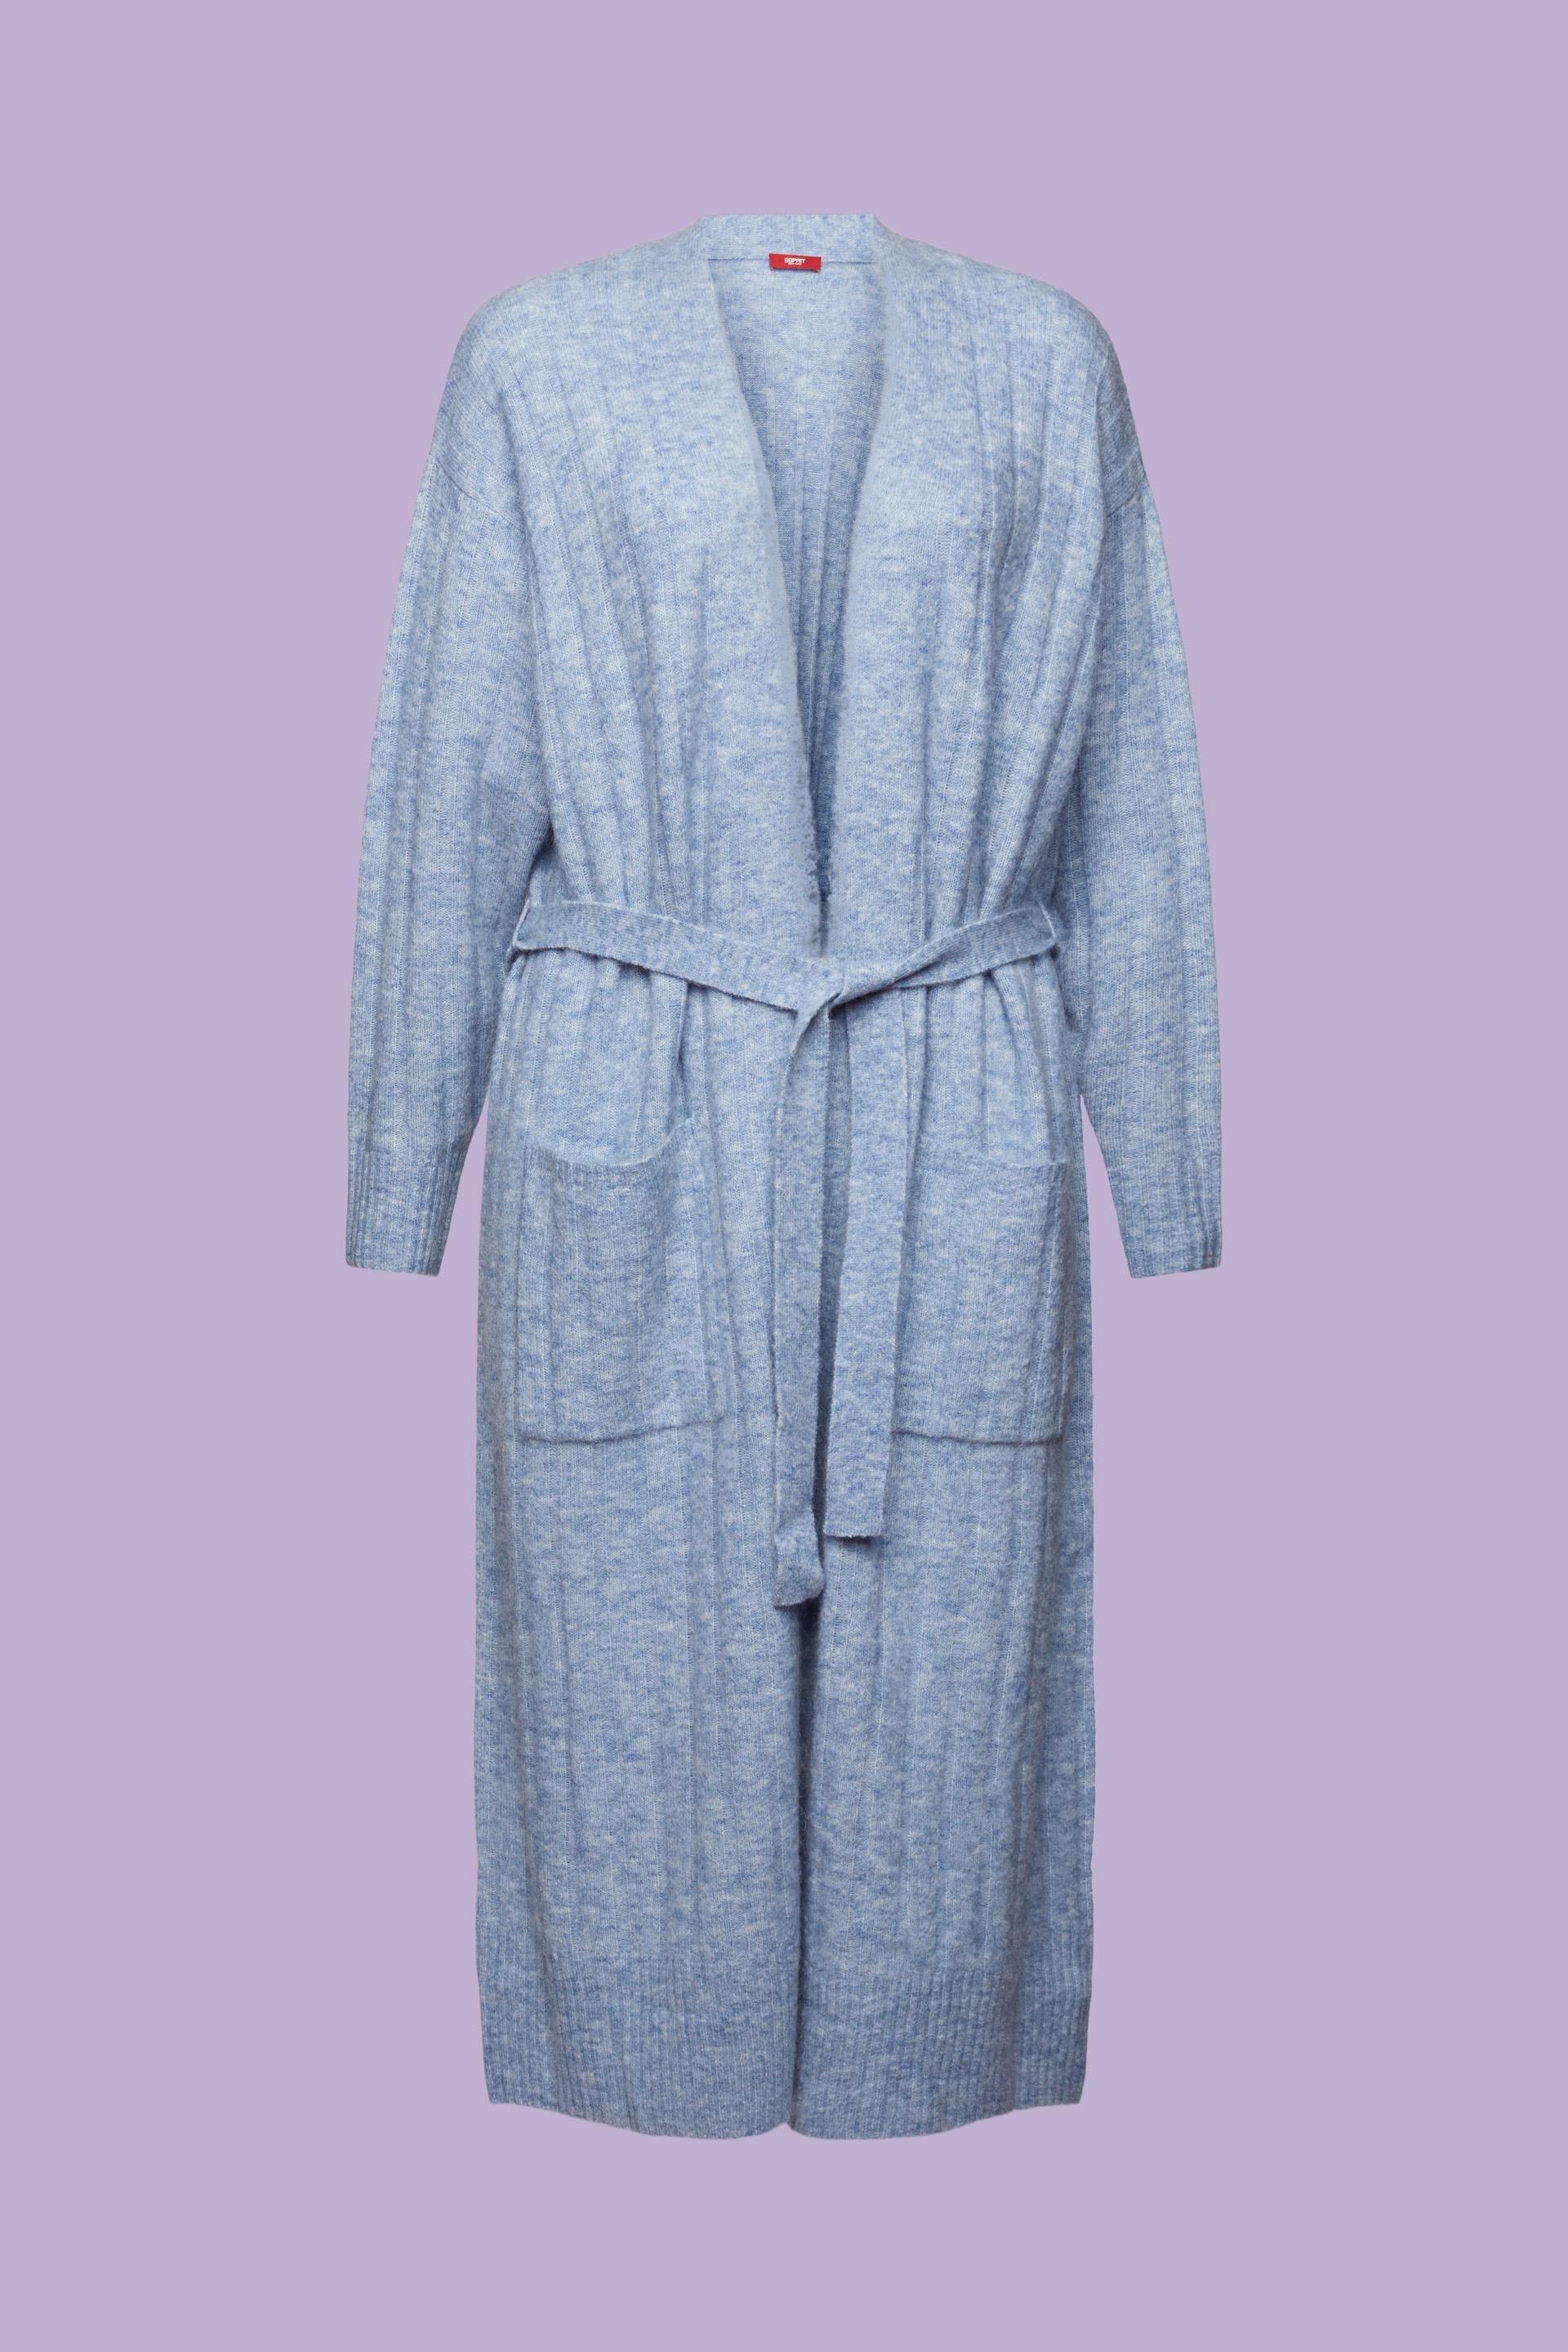 Blauw Stijlvolle Cardigan van Luxe Mohair en Wol voor de Ultieme Comfortabele Look op Koele Dagen